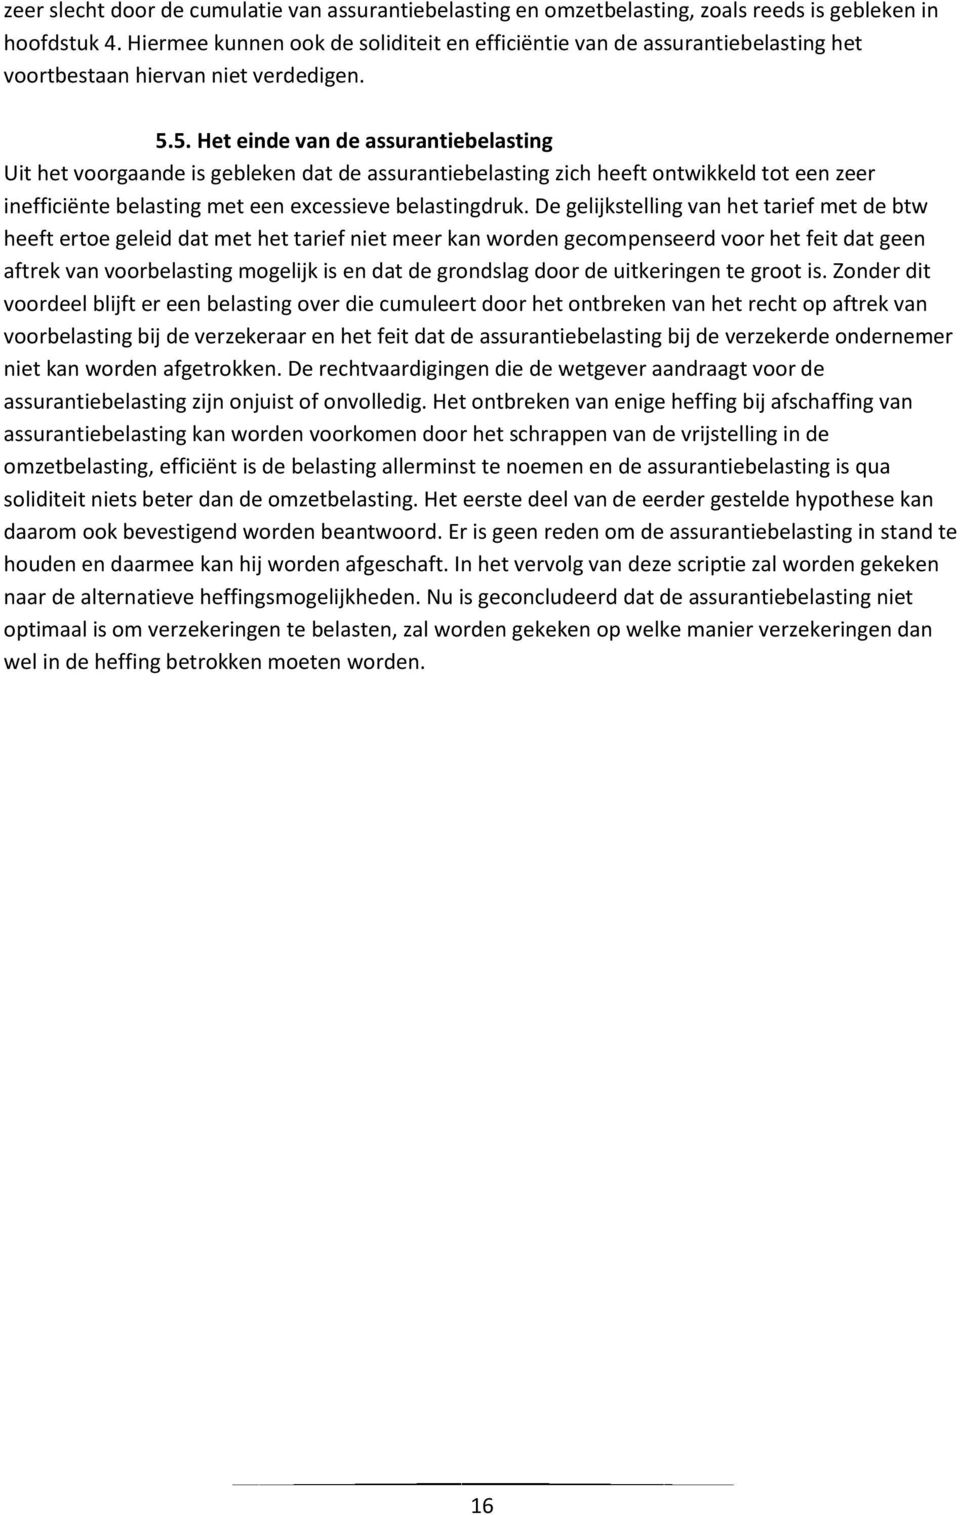 5. Het einde van de assurantiebelasting Uit het voorgaande is gebleken dat de assurantiebelasting zich heeft ontwikkeld tot een zeer inefficiënte belasting met een excessieve belastingdruk.